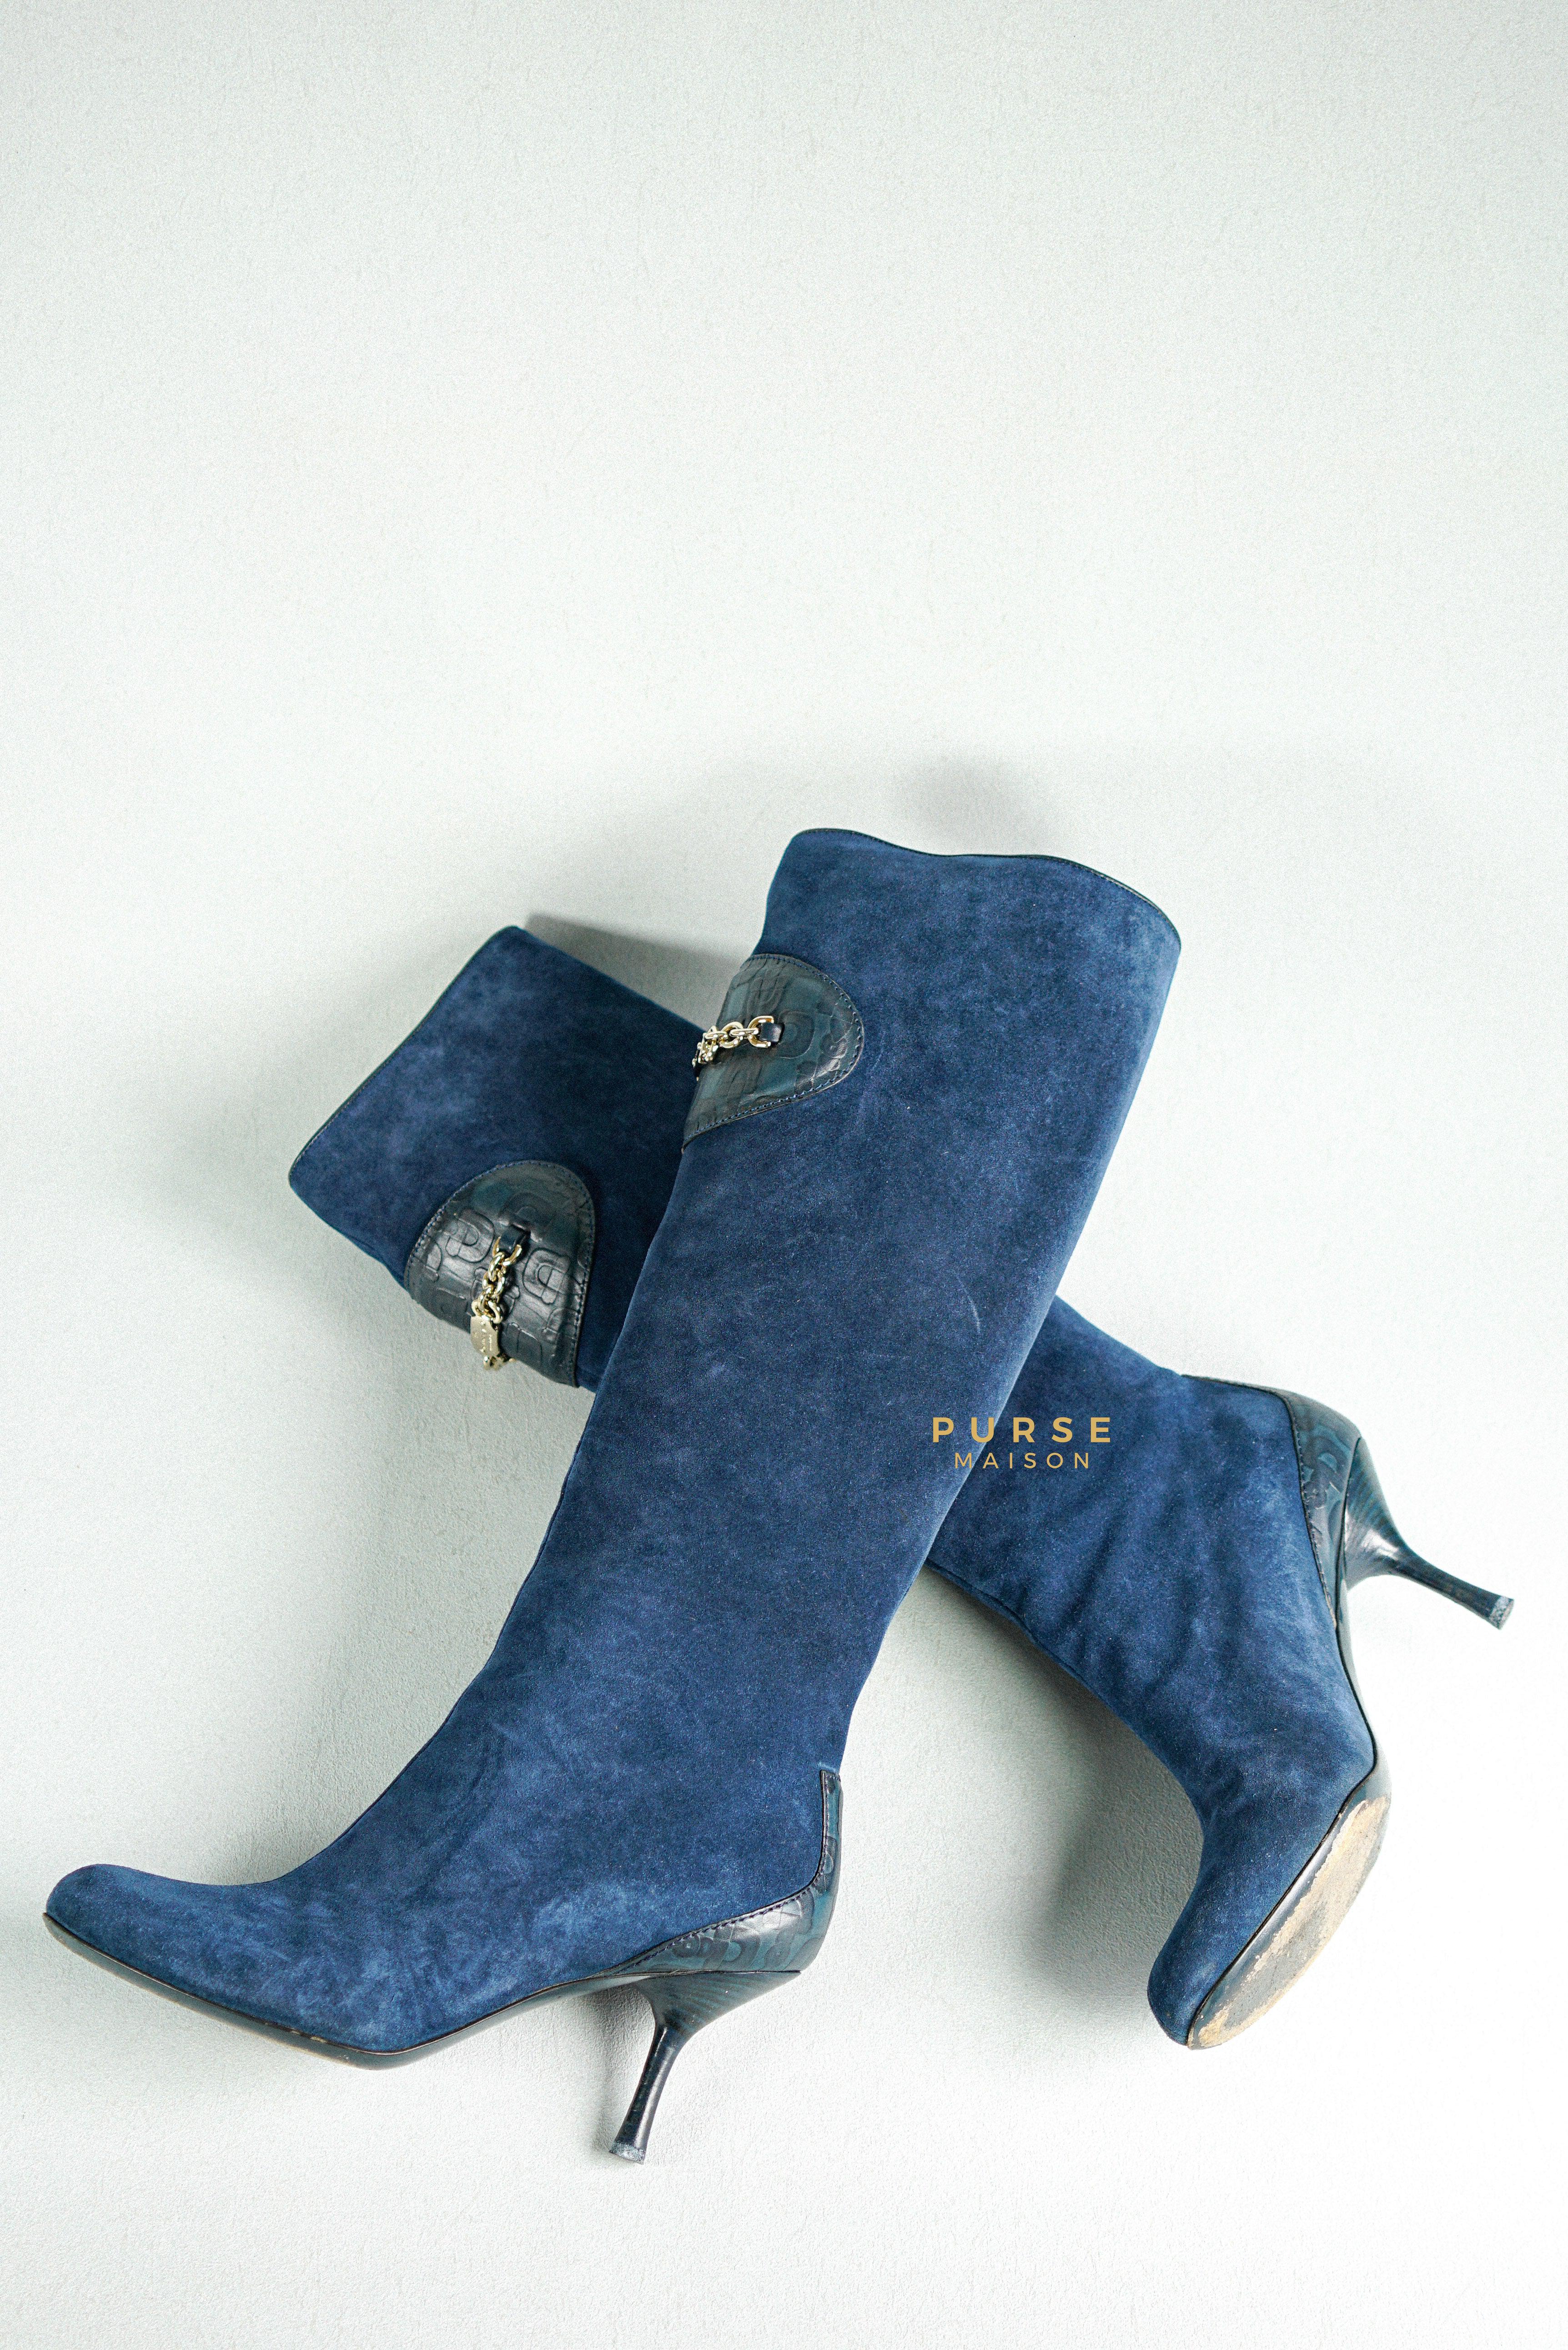 Gucci Suede Blue Knee-Length Boots Size 35 EU | Purse Maison Luxury Bags Shop